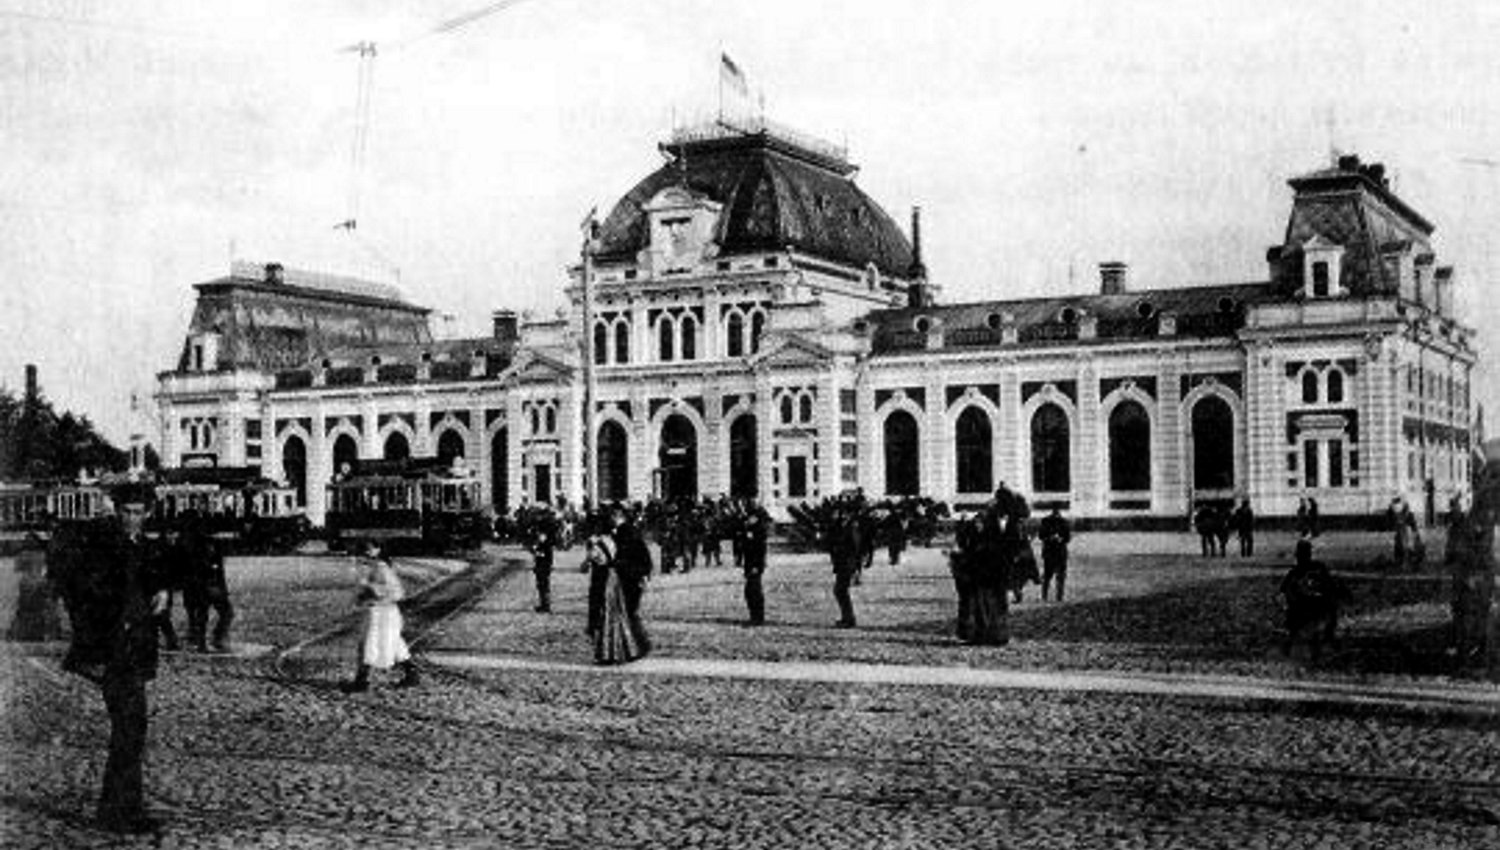 Павелецкий вокзал до реконструкции